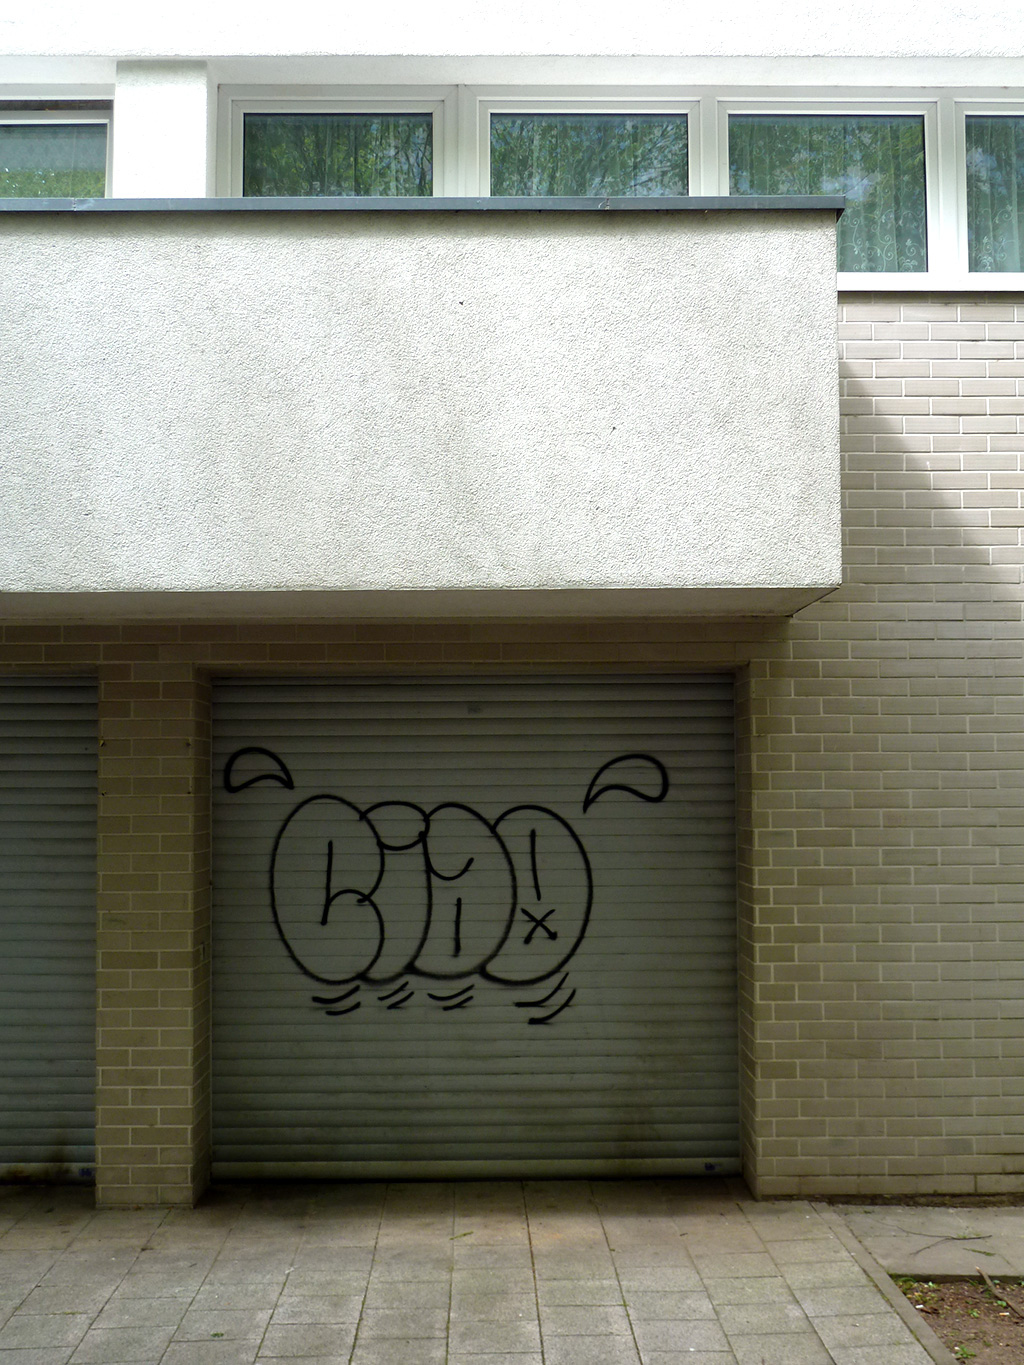 CIAO-Graffiti in Offenbach